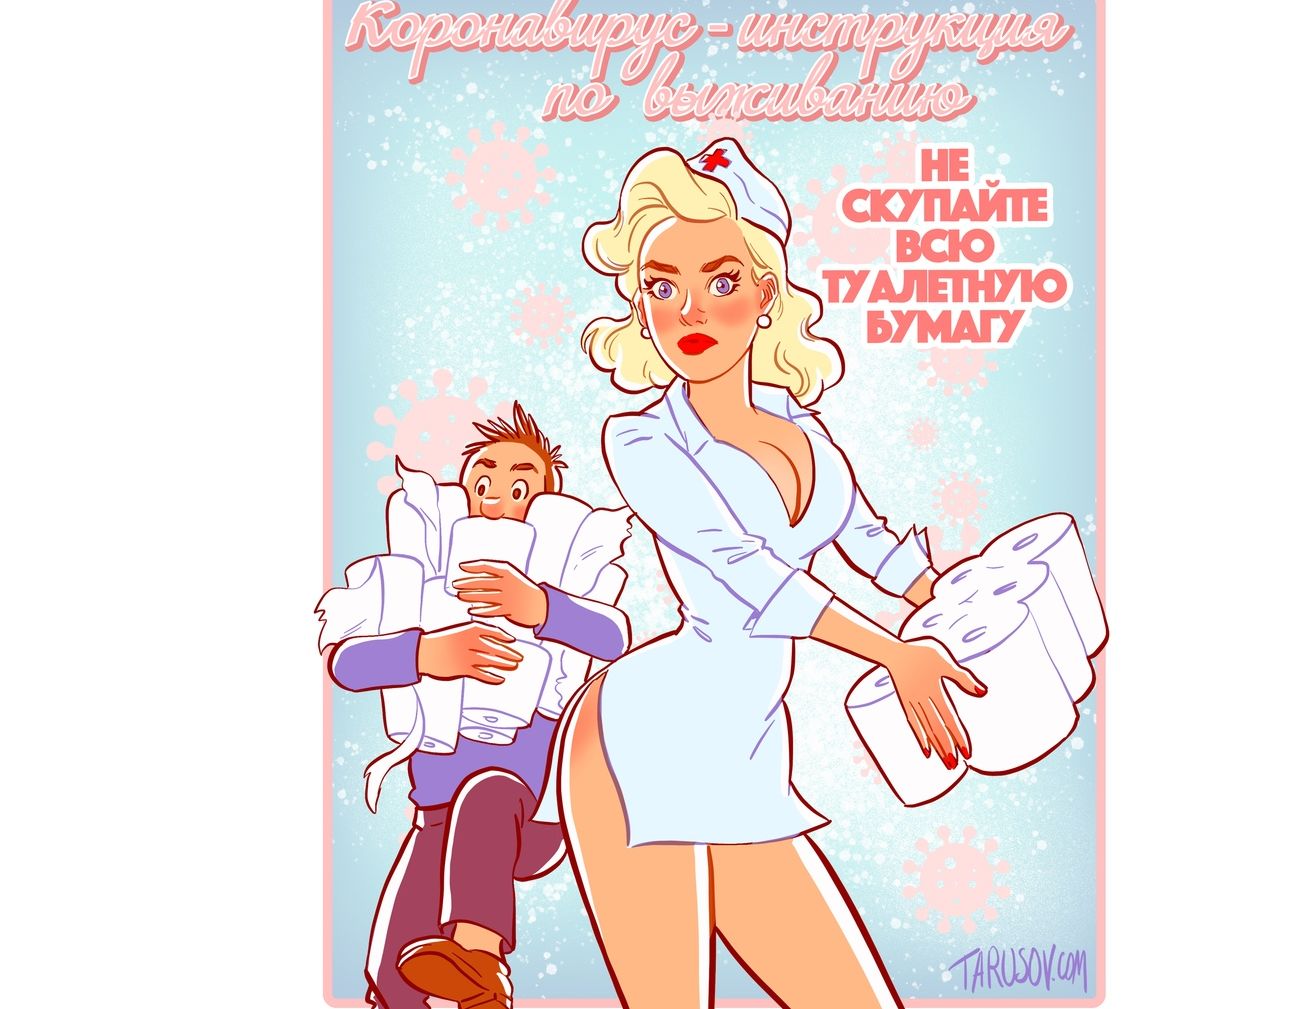 Художник из Рыбинска создал пин-ап памятку по защите от коронавируса